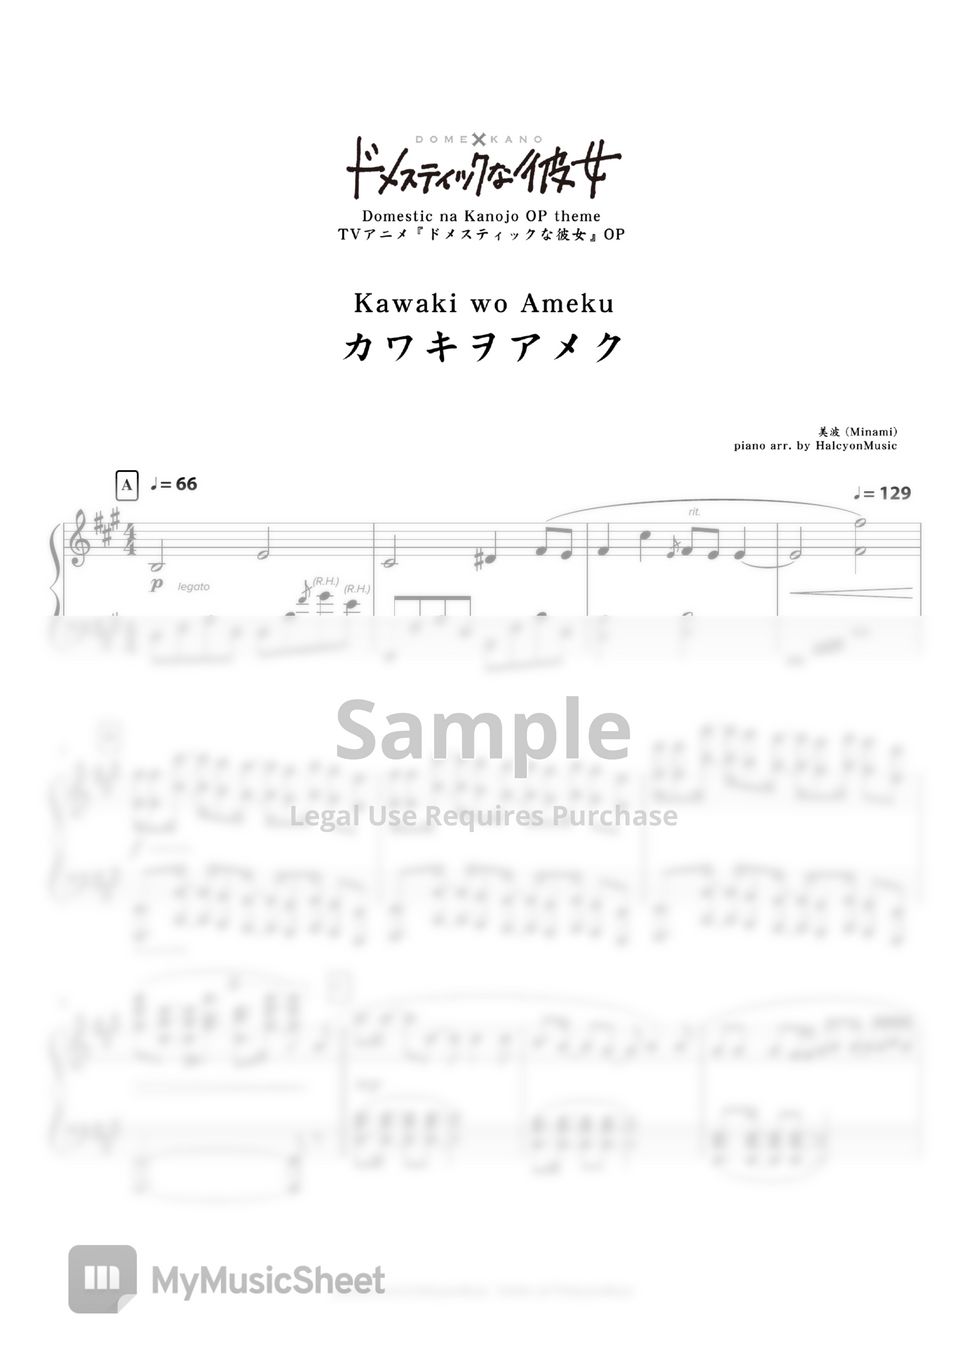 Minami - Kawaki wo Ameku (Domestic na Kanojo OP) by HalcyonMusic